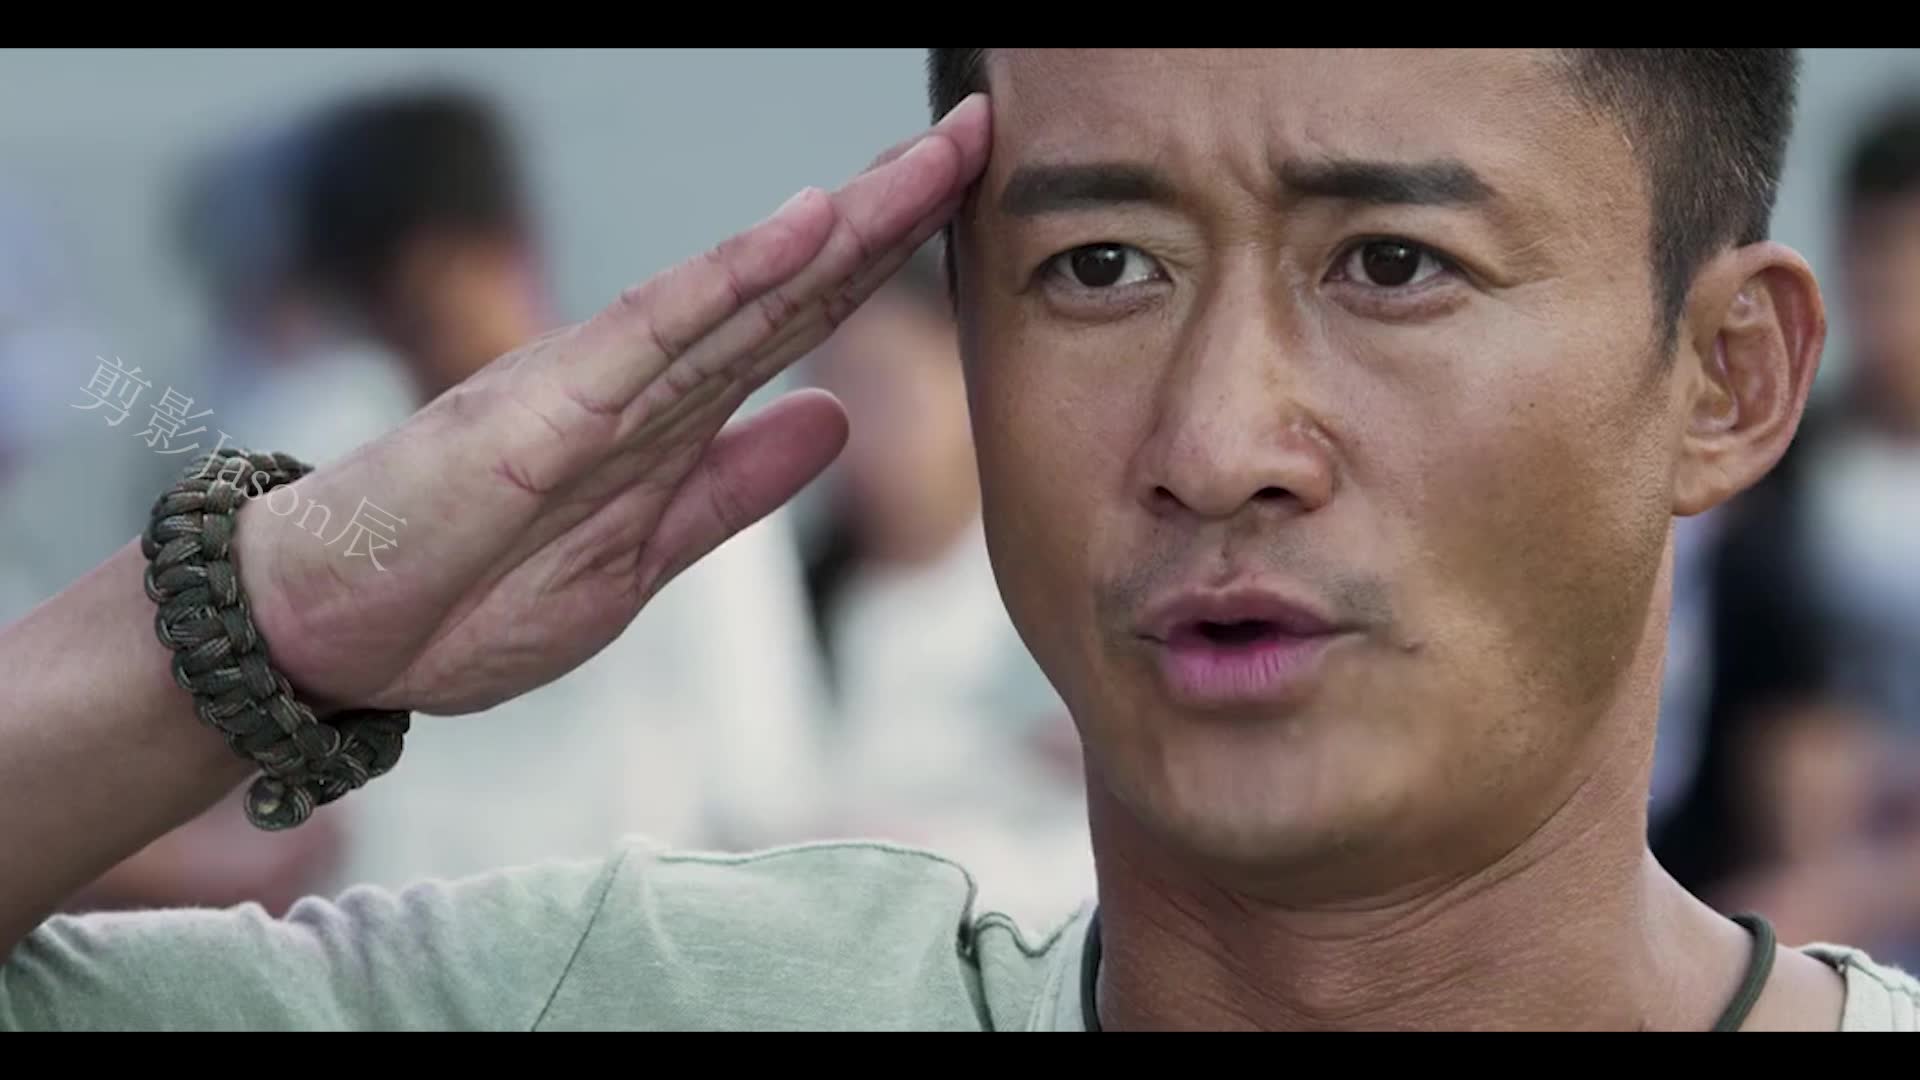 战狼2:吴京告诉我们,什么是军人!即使脱了军装,职责还在!